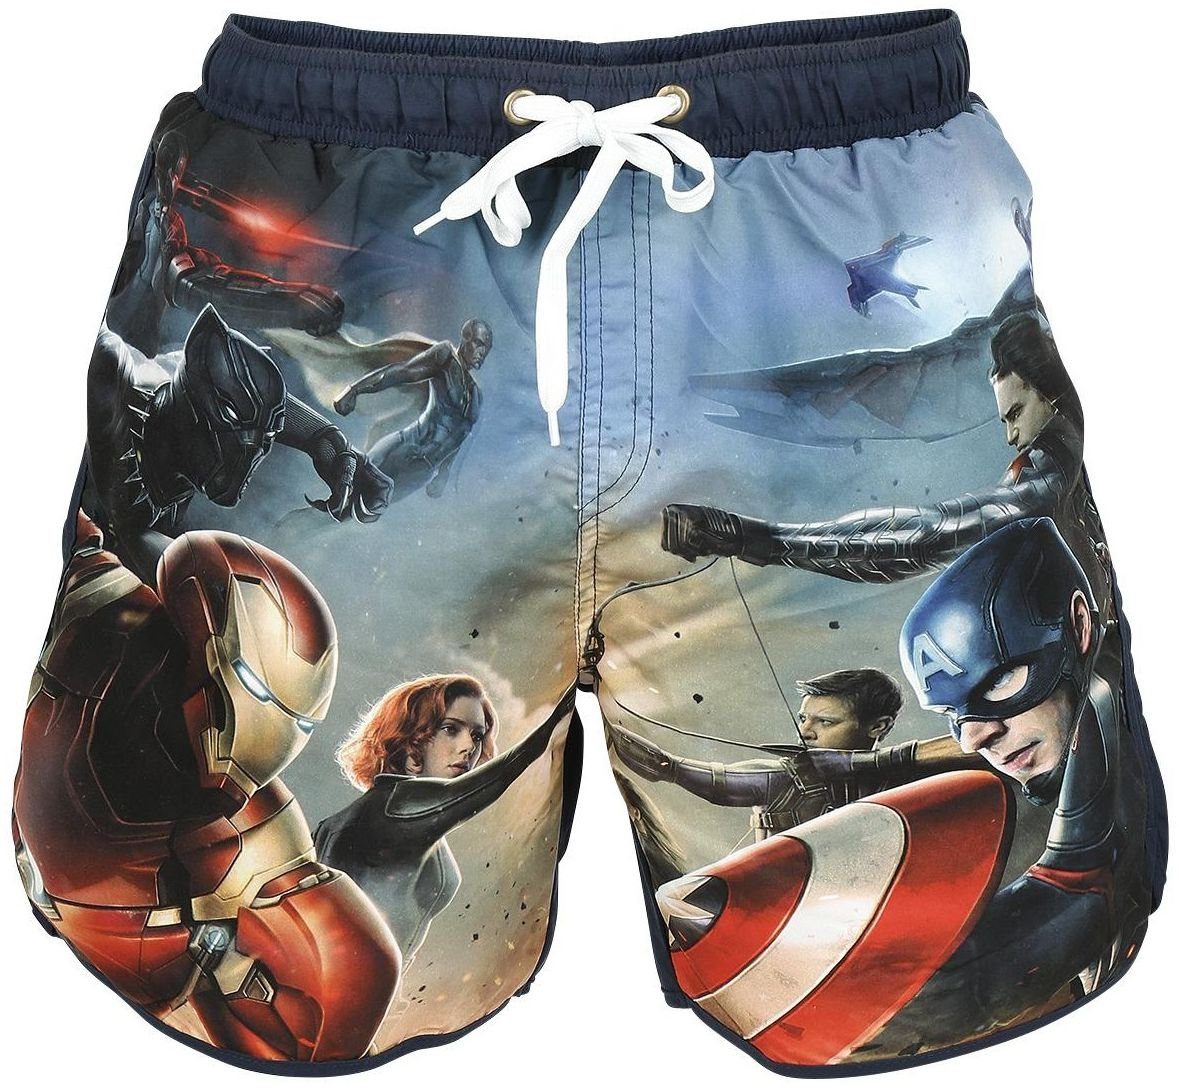 MARVEL Badeshorts Captain America Badehose Surfshorts Shorts zum Schwimmen  Erwachsene + Jugendliche Gr. S M L XL